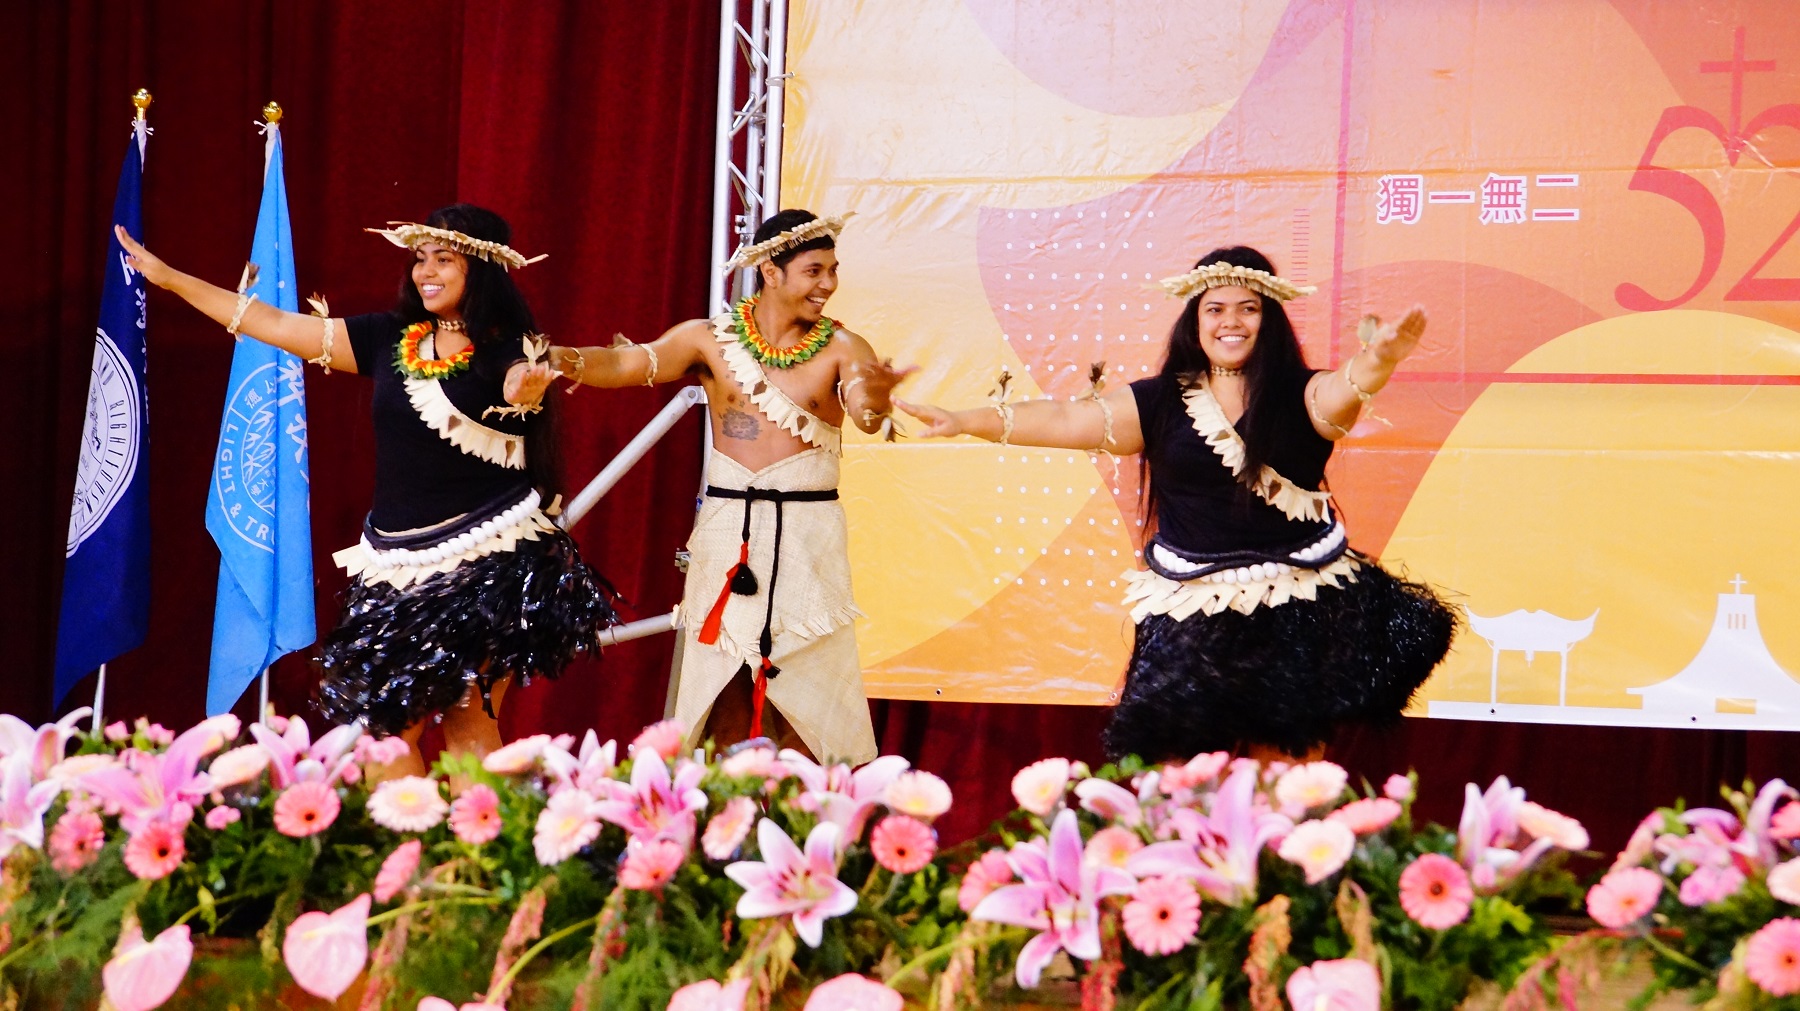 吉里巴斯共和國在台學生帶來他們國家的傳統舞蹈，展現多元文化交流的特色